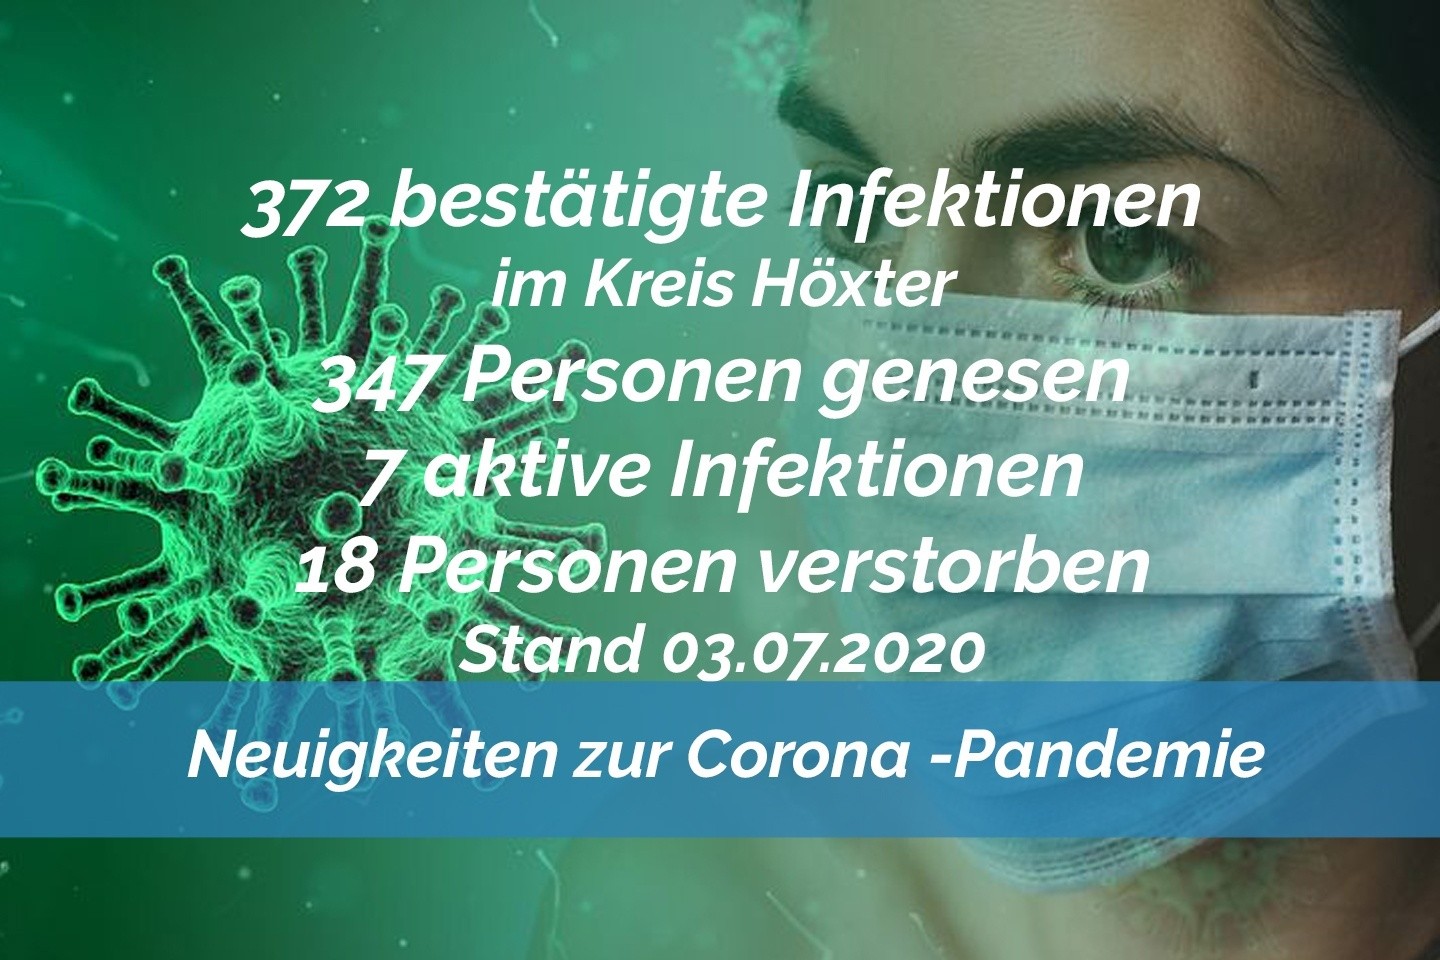 Update vom 03. Juli: 372 bestätigte Infektionen mit dem neuen Coronavirus im Kreis Höxter